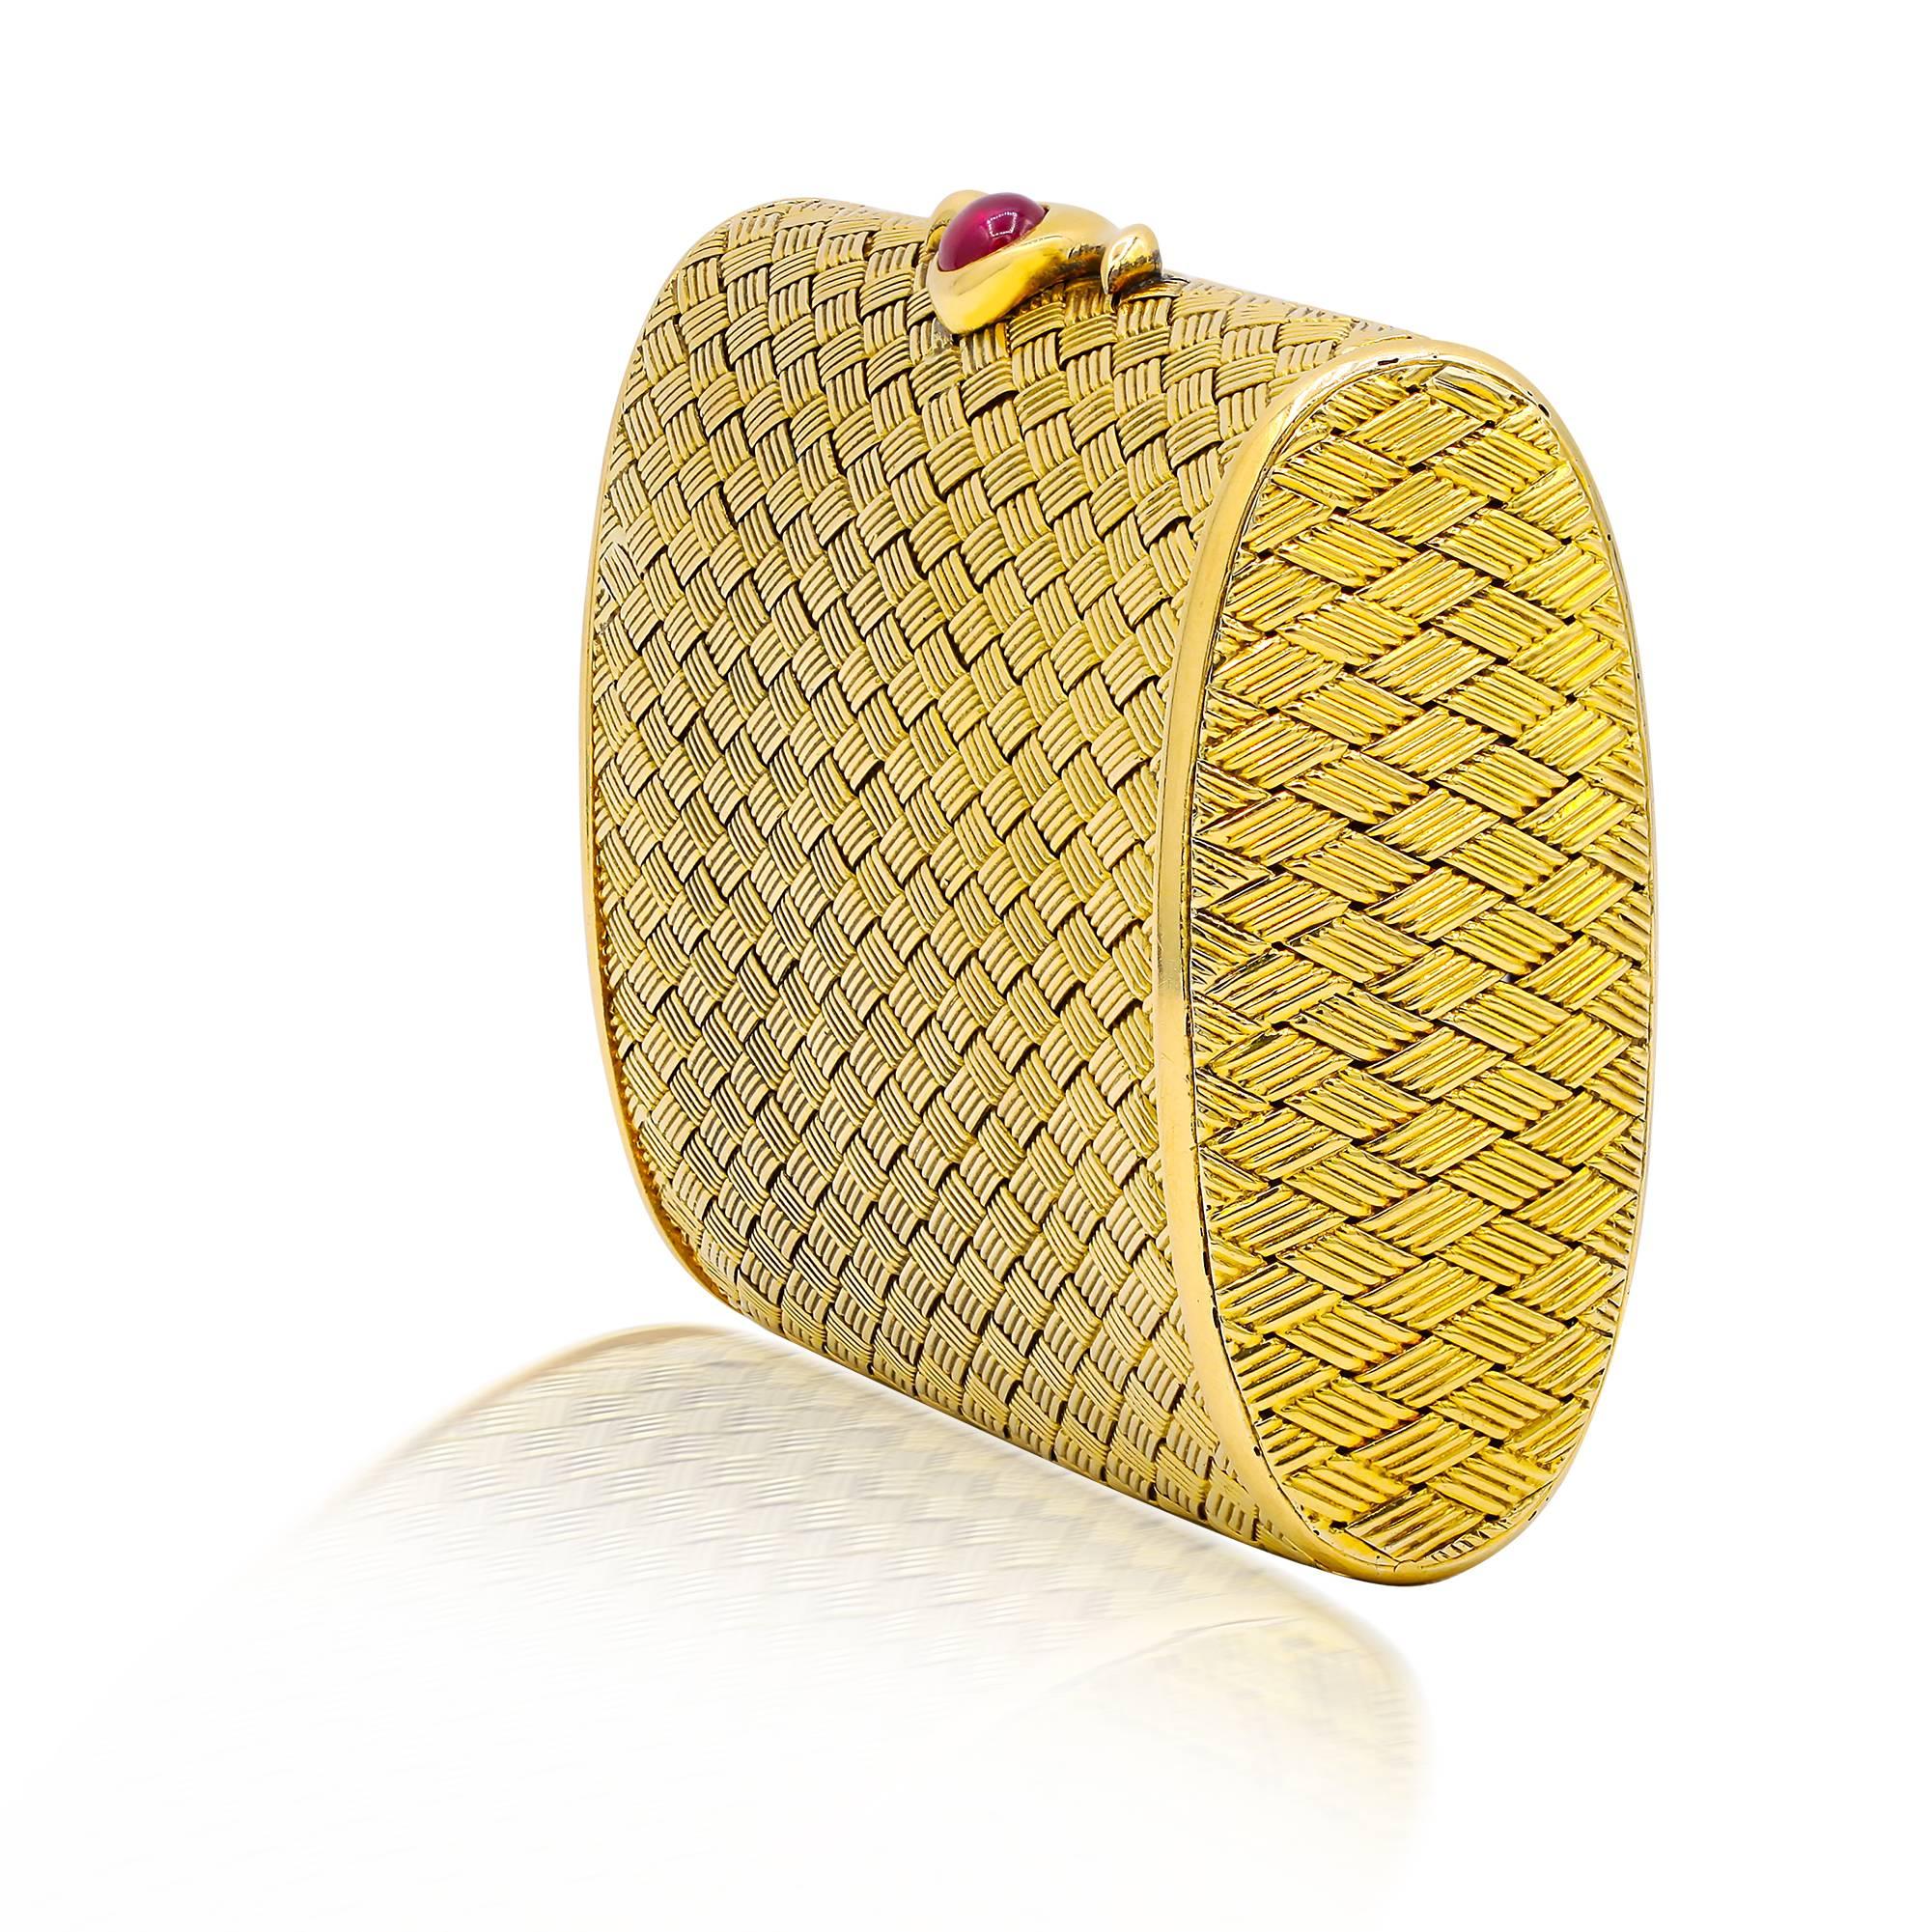 Petite pochette en or jaune 18 carats, pesant 127 grammes et présentant un rubis cabochon de forme ovale. Comme un état neuf.

 